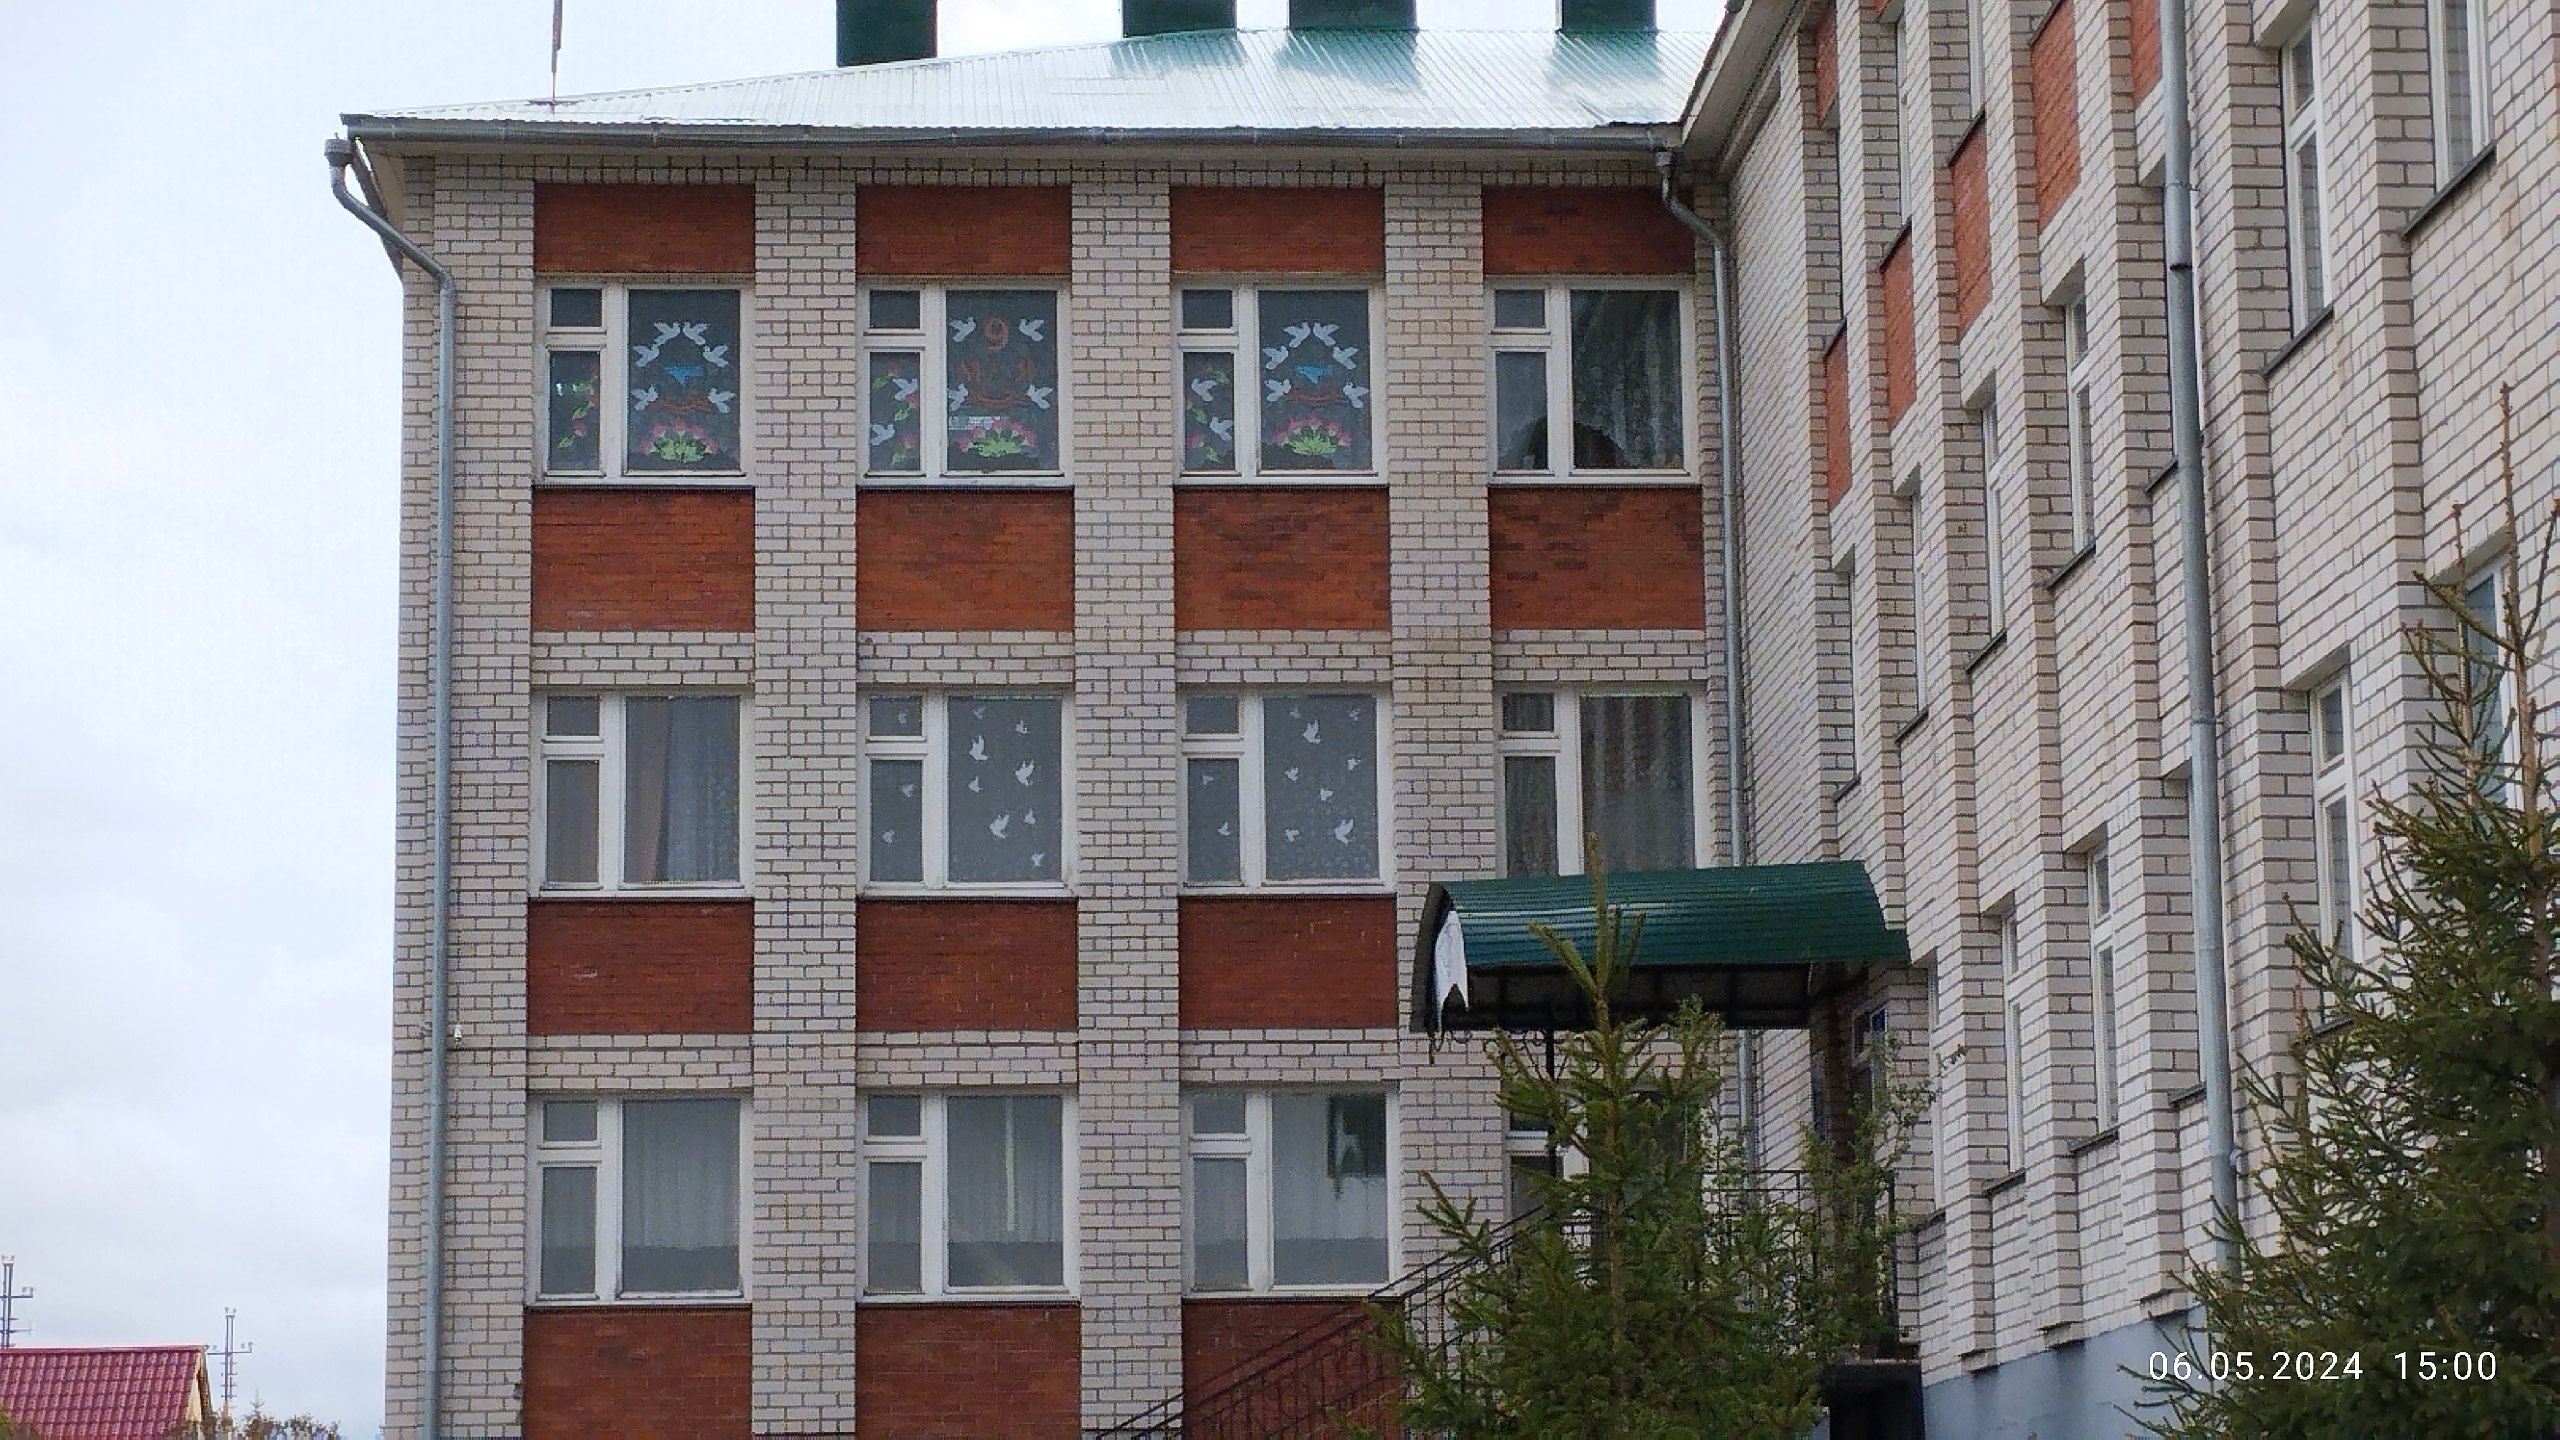 Жители Кукморского района активно украшают окна в преддверии 9 Мая